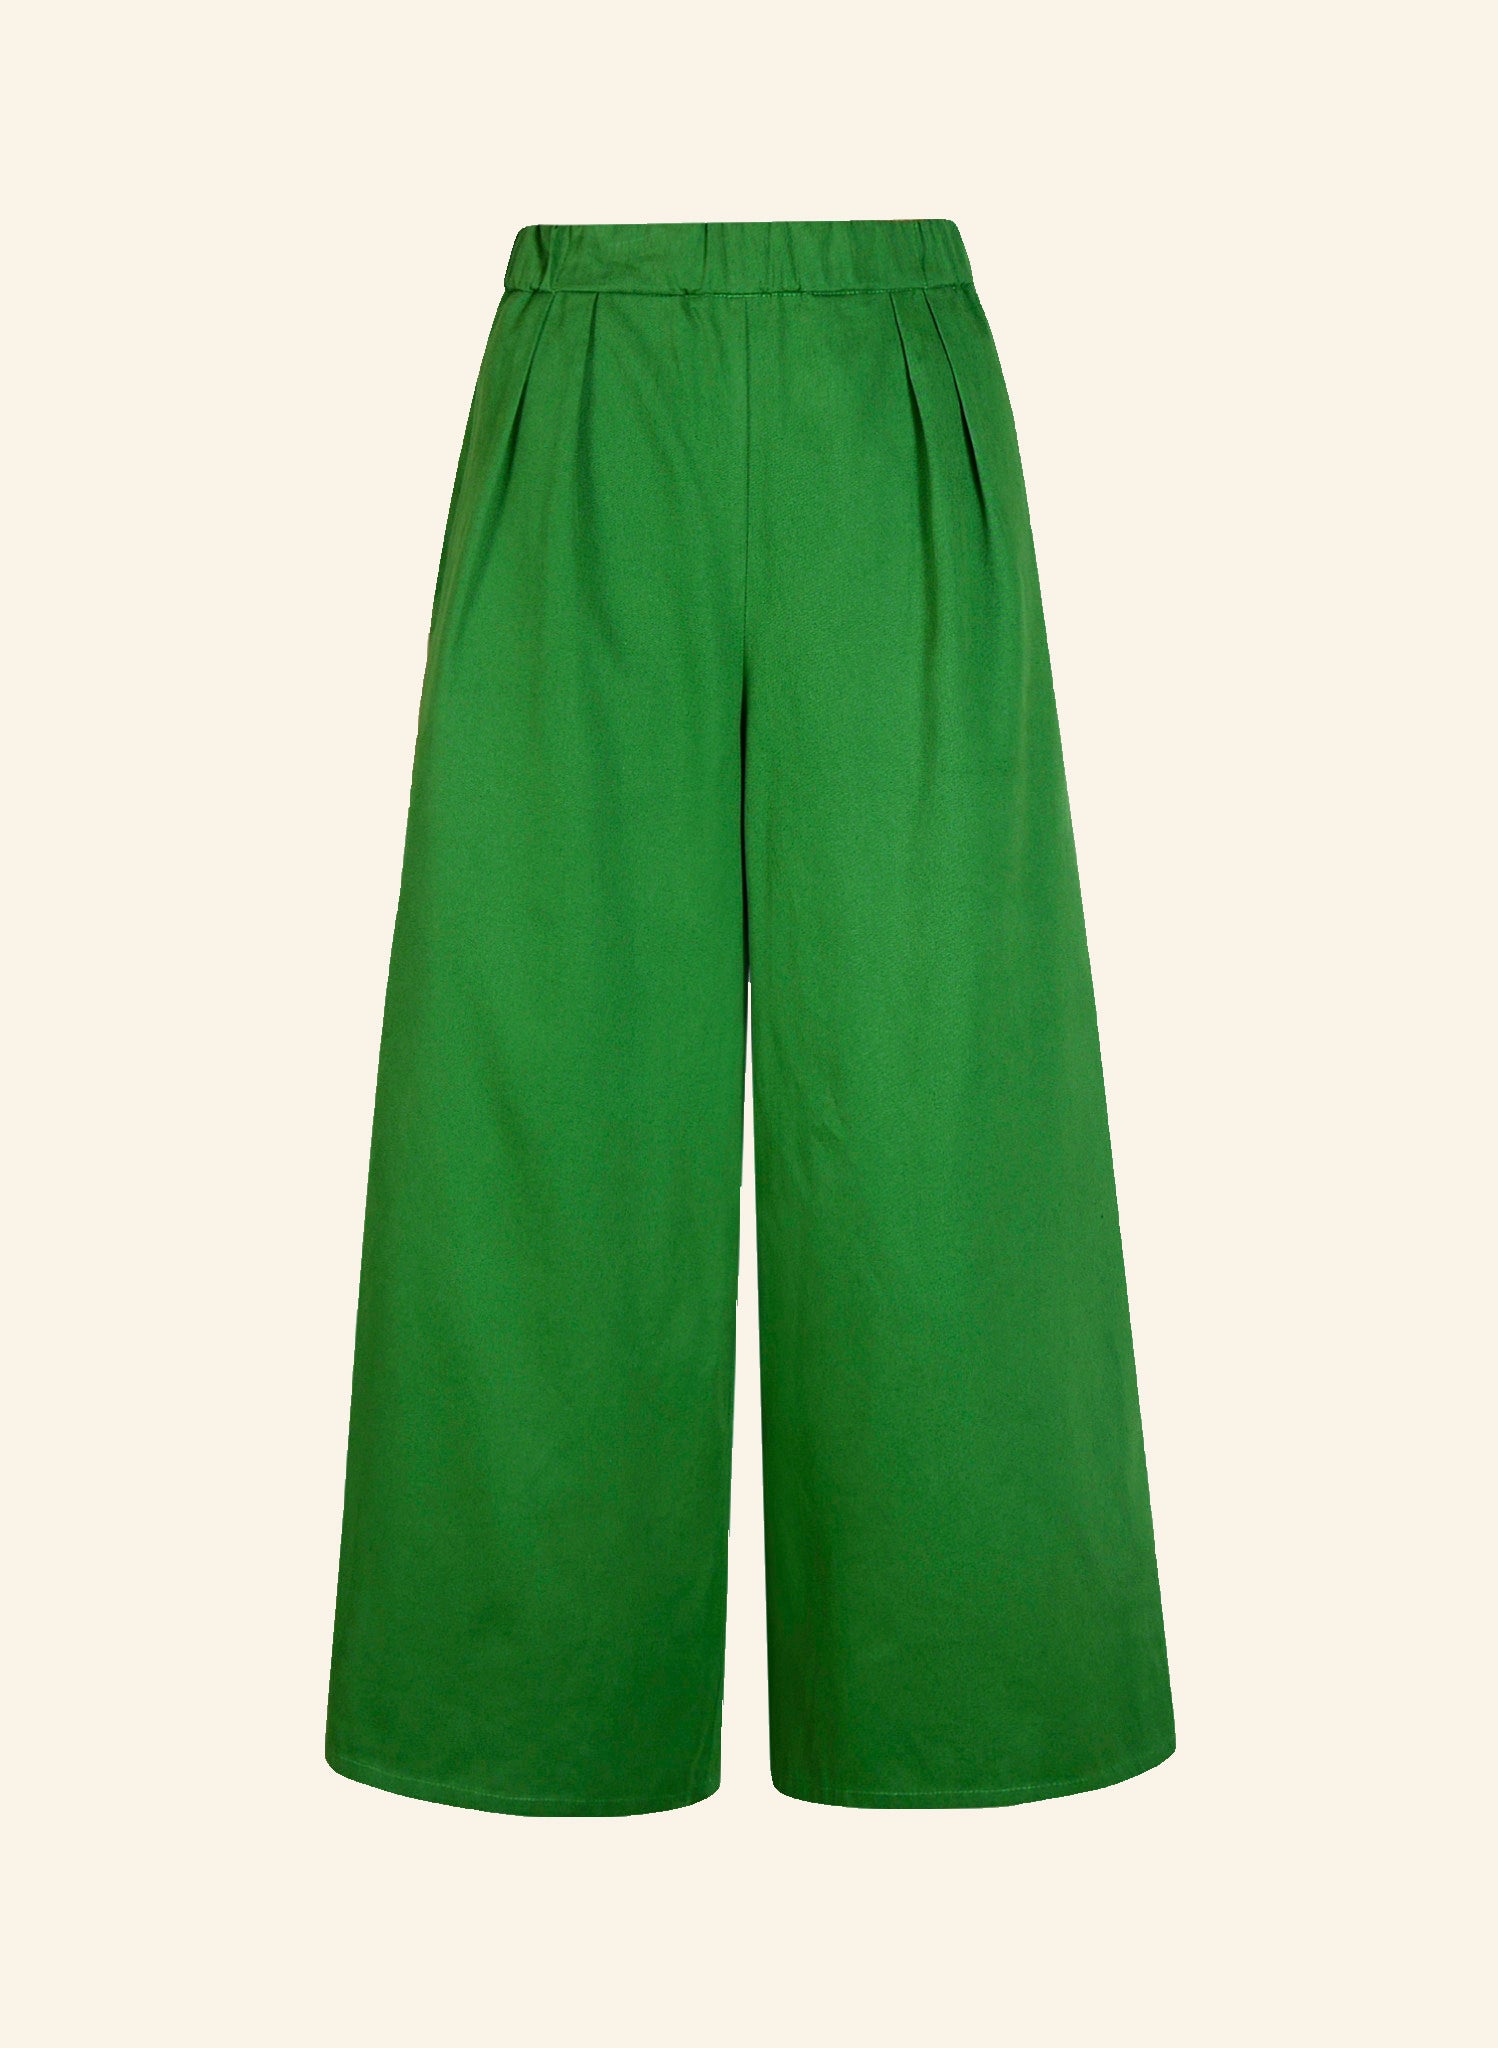 Edith - Green Workwear Trousers